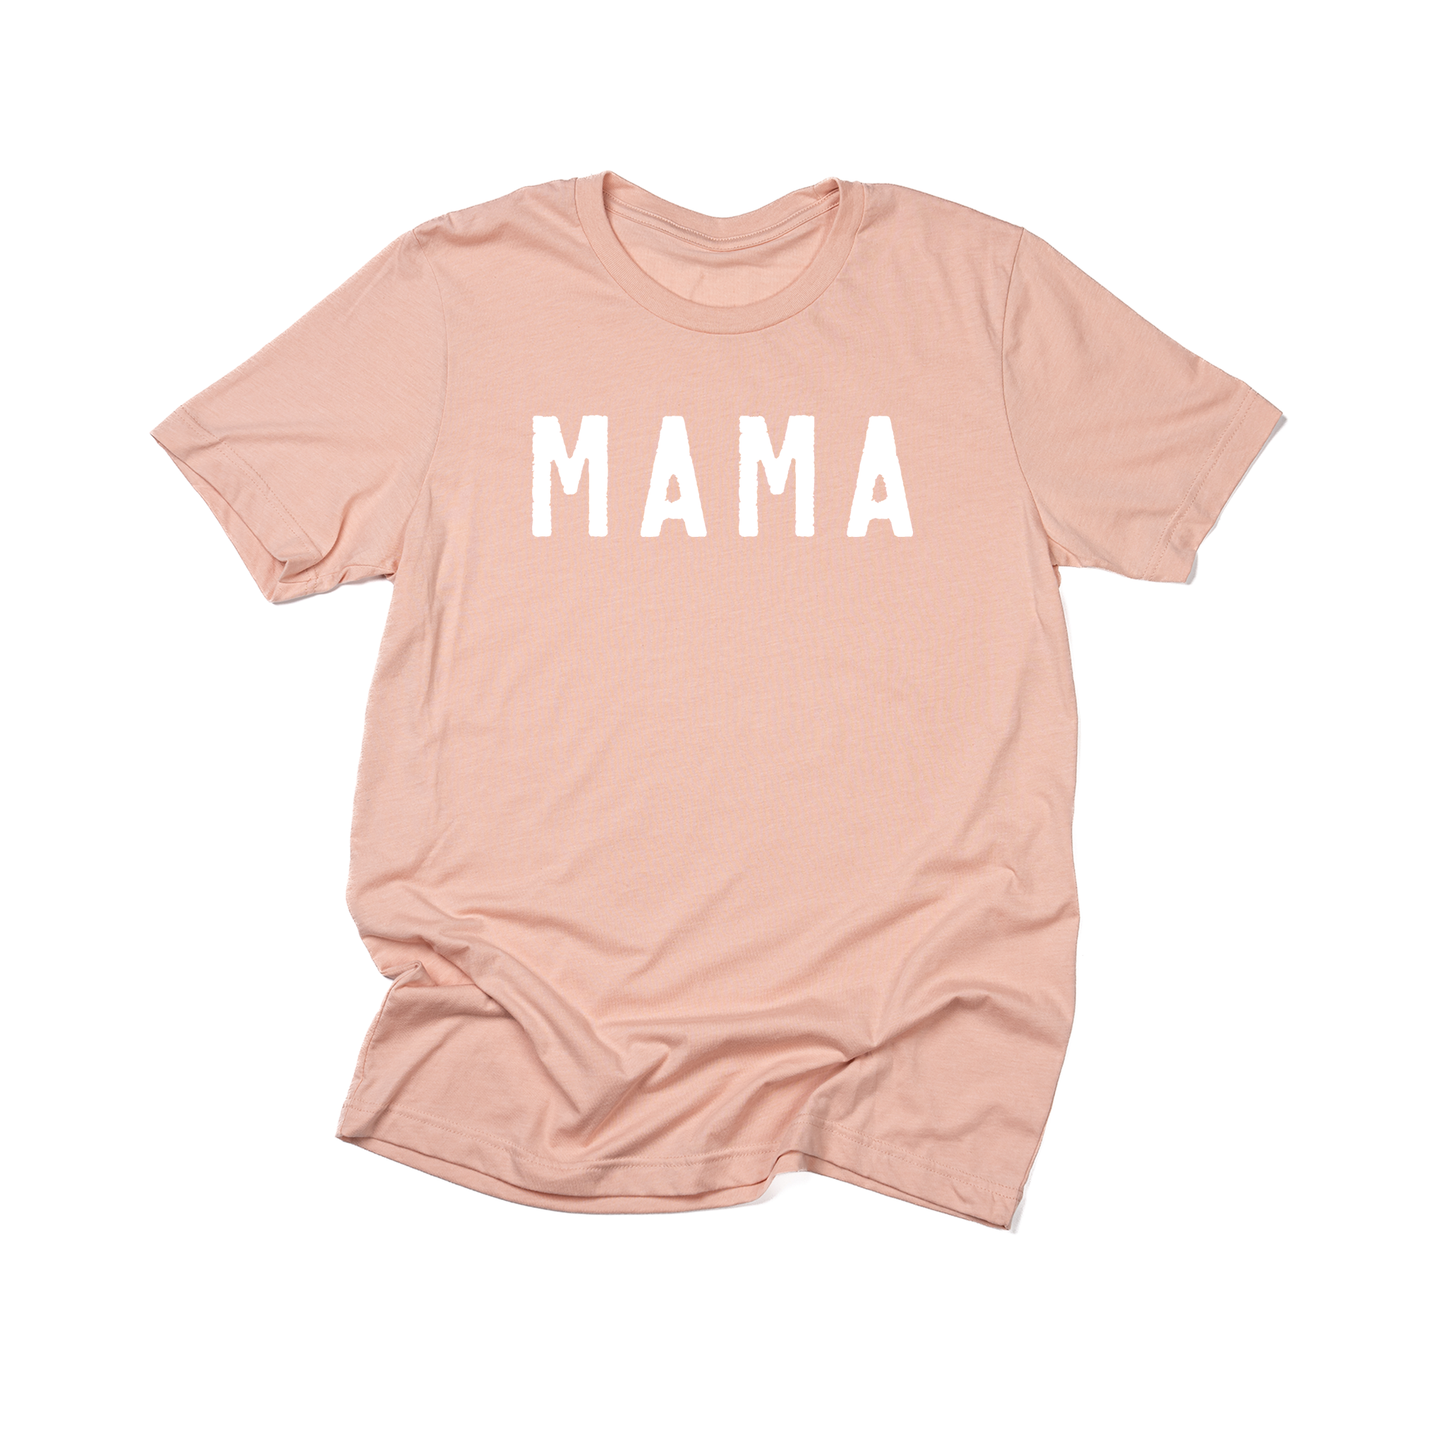 Mama (Rough, White) - Tee (Peach)